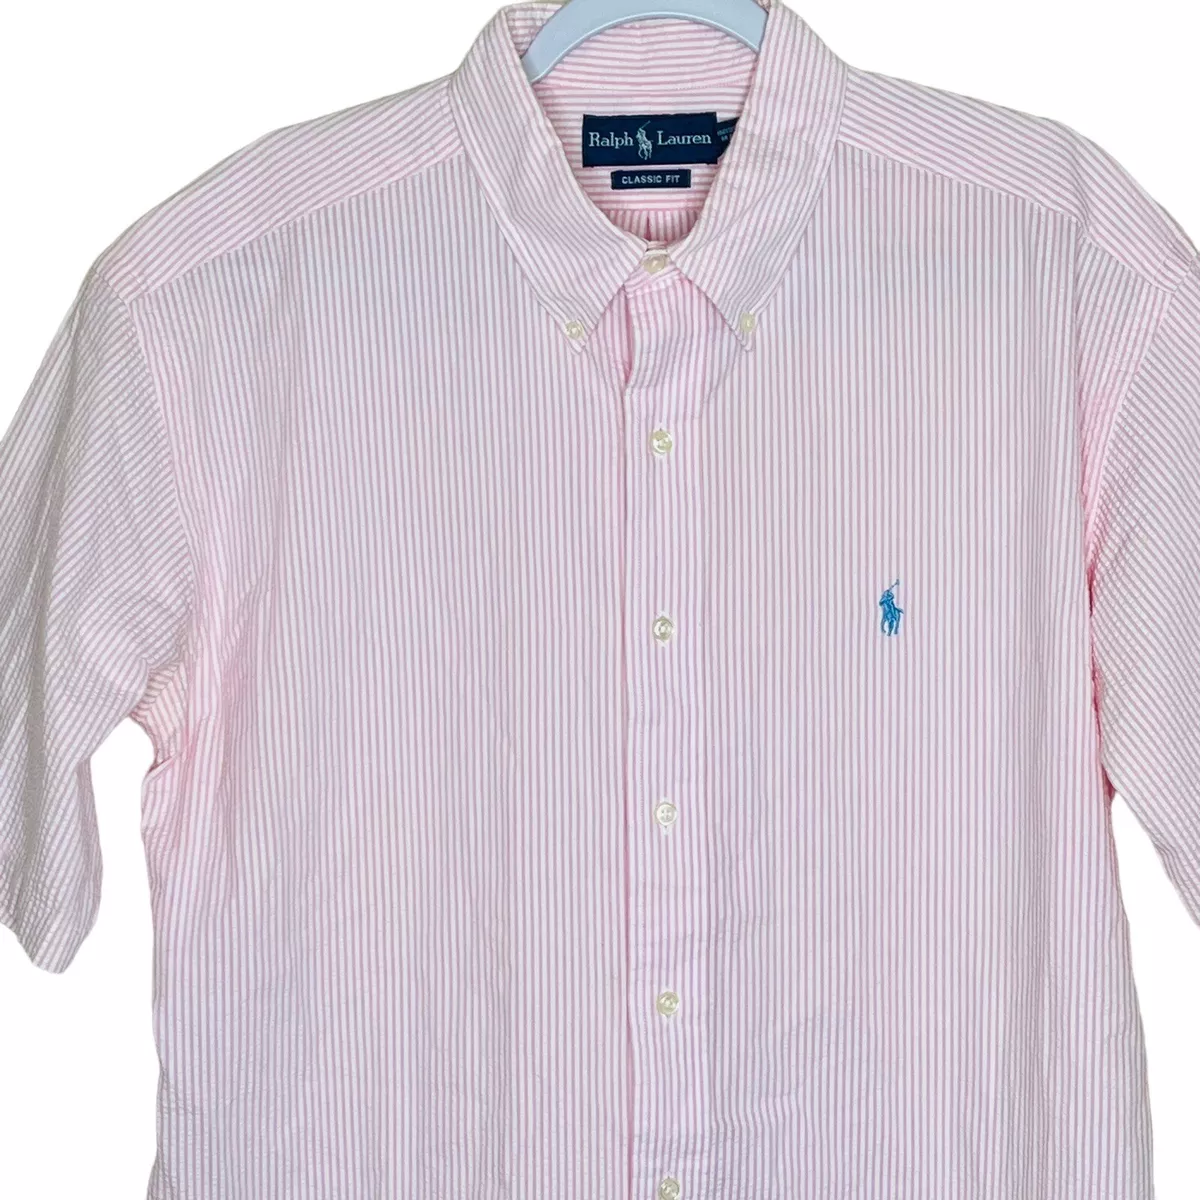 Polo Ralph Lauren Seersucker Shirt Classic Short Sleeve Striped